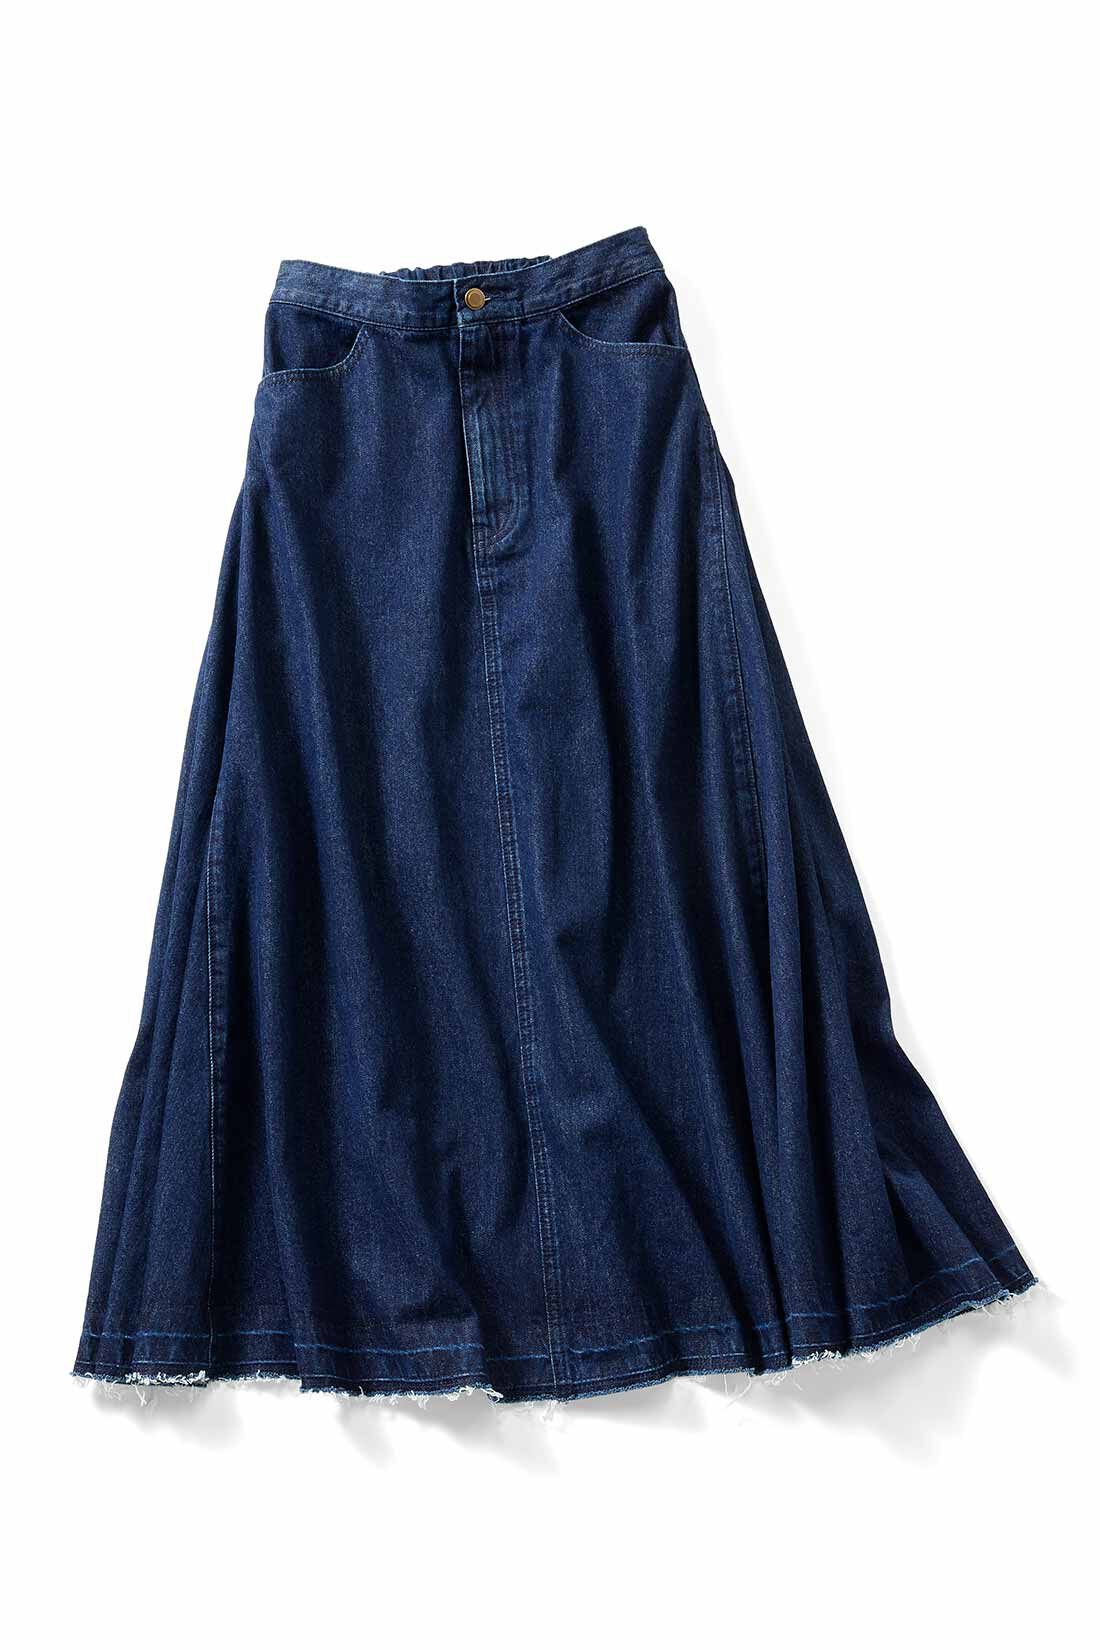 IEDIT[イディット] ぜいたくなフレアーシルエットのこだわりデニムスカート〈インディゴブルー〉｜レディースファッション・洋服の通販｜IEDIT